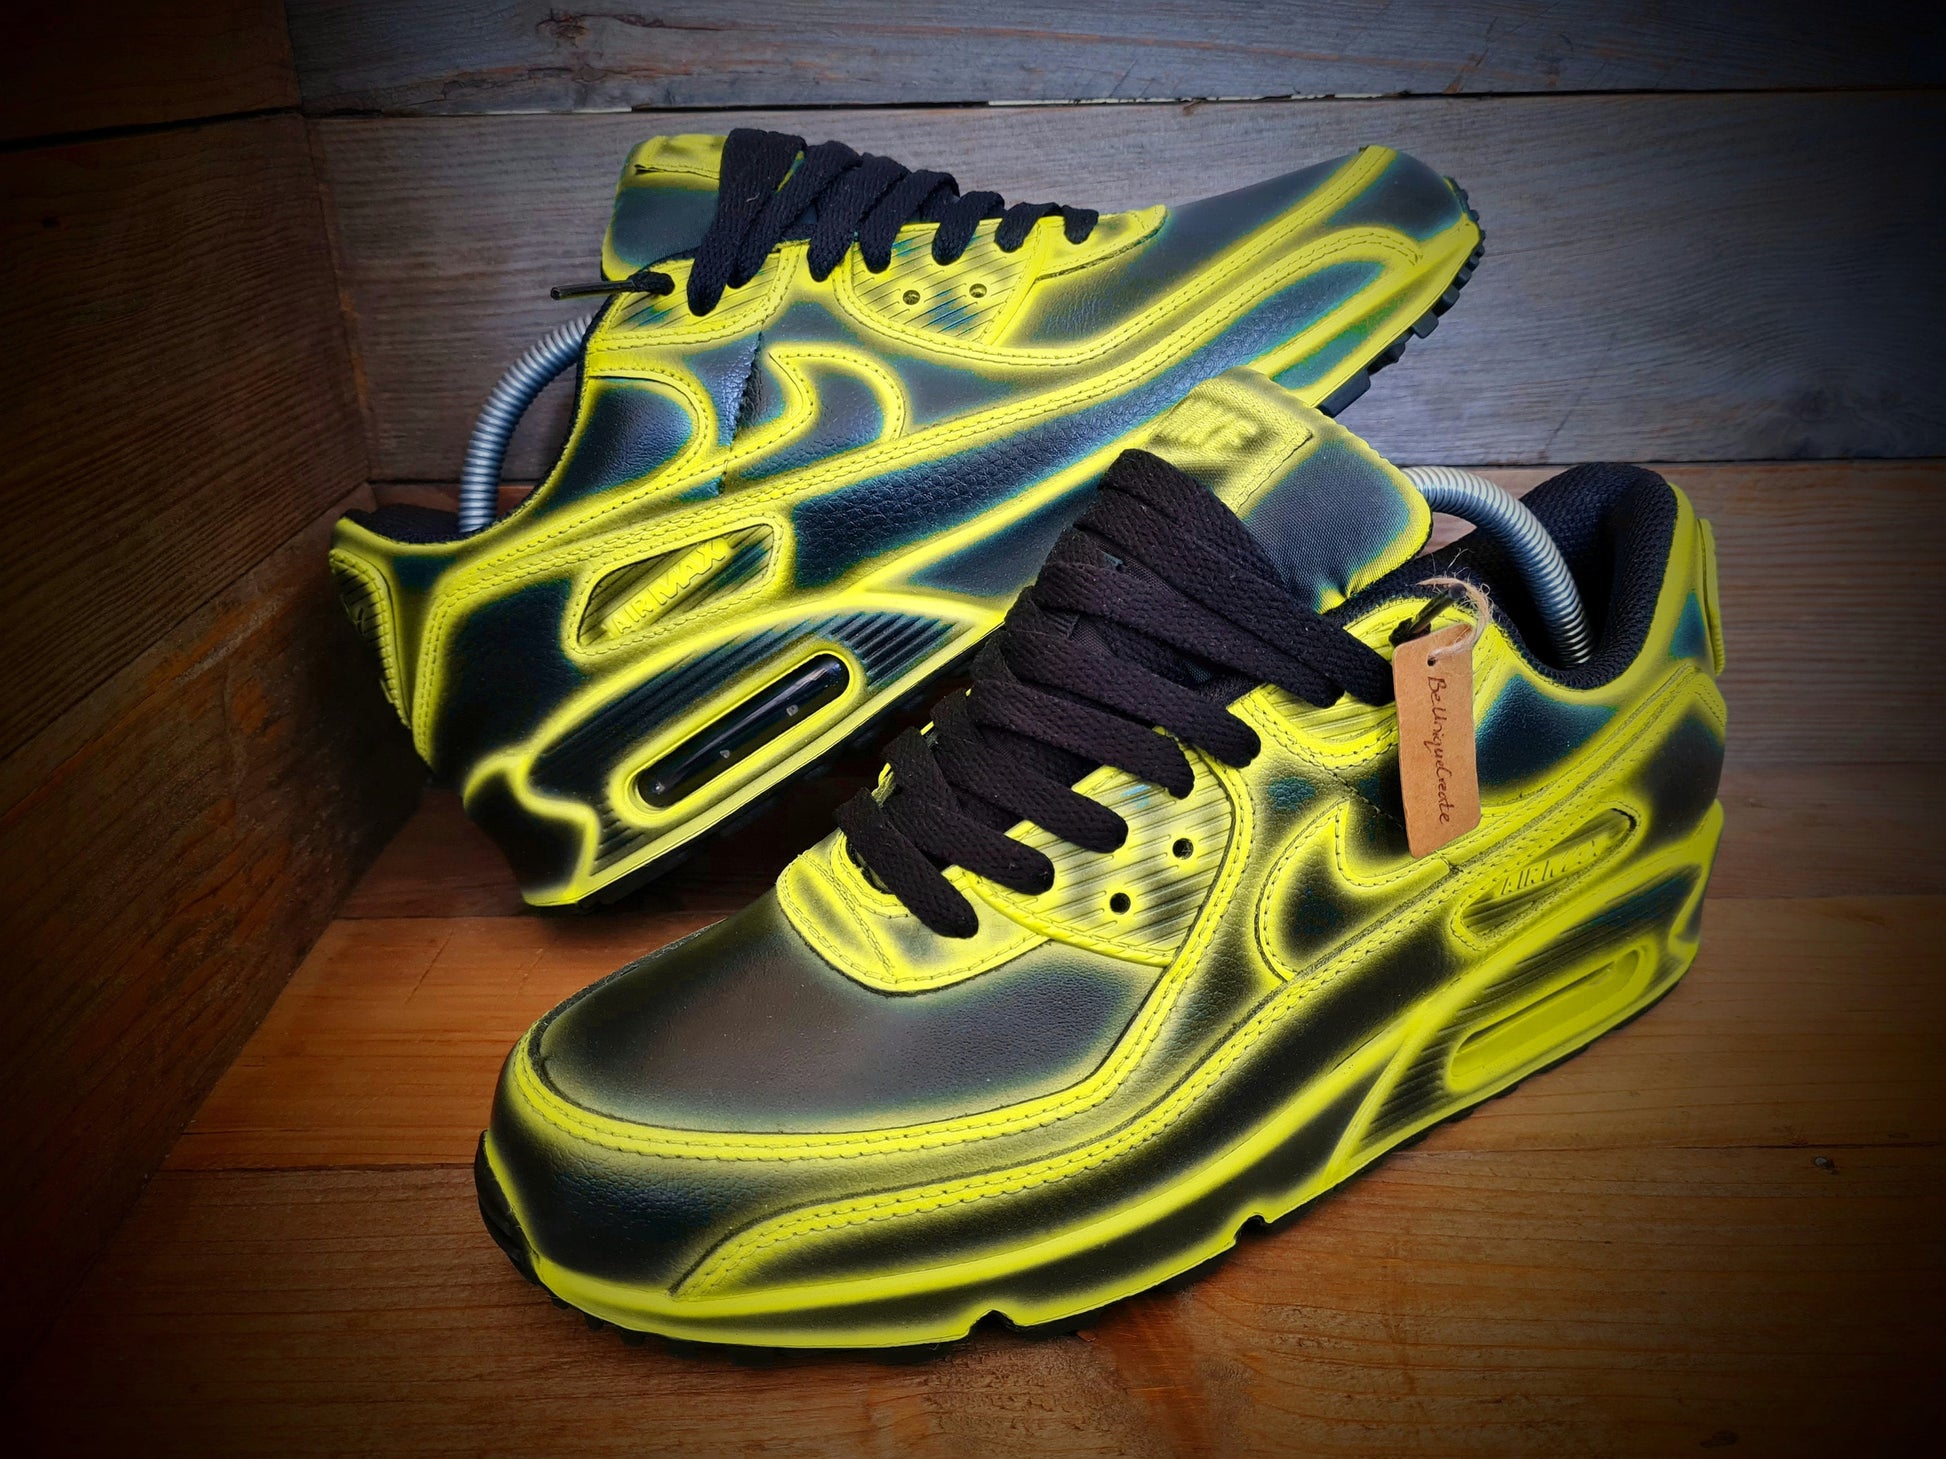 Custom Painted Air Max 90/Sneakers/Shoes/Kicks/Premium/Personalised/Yellow Cartoon